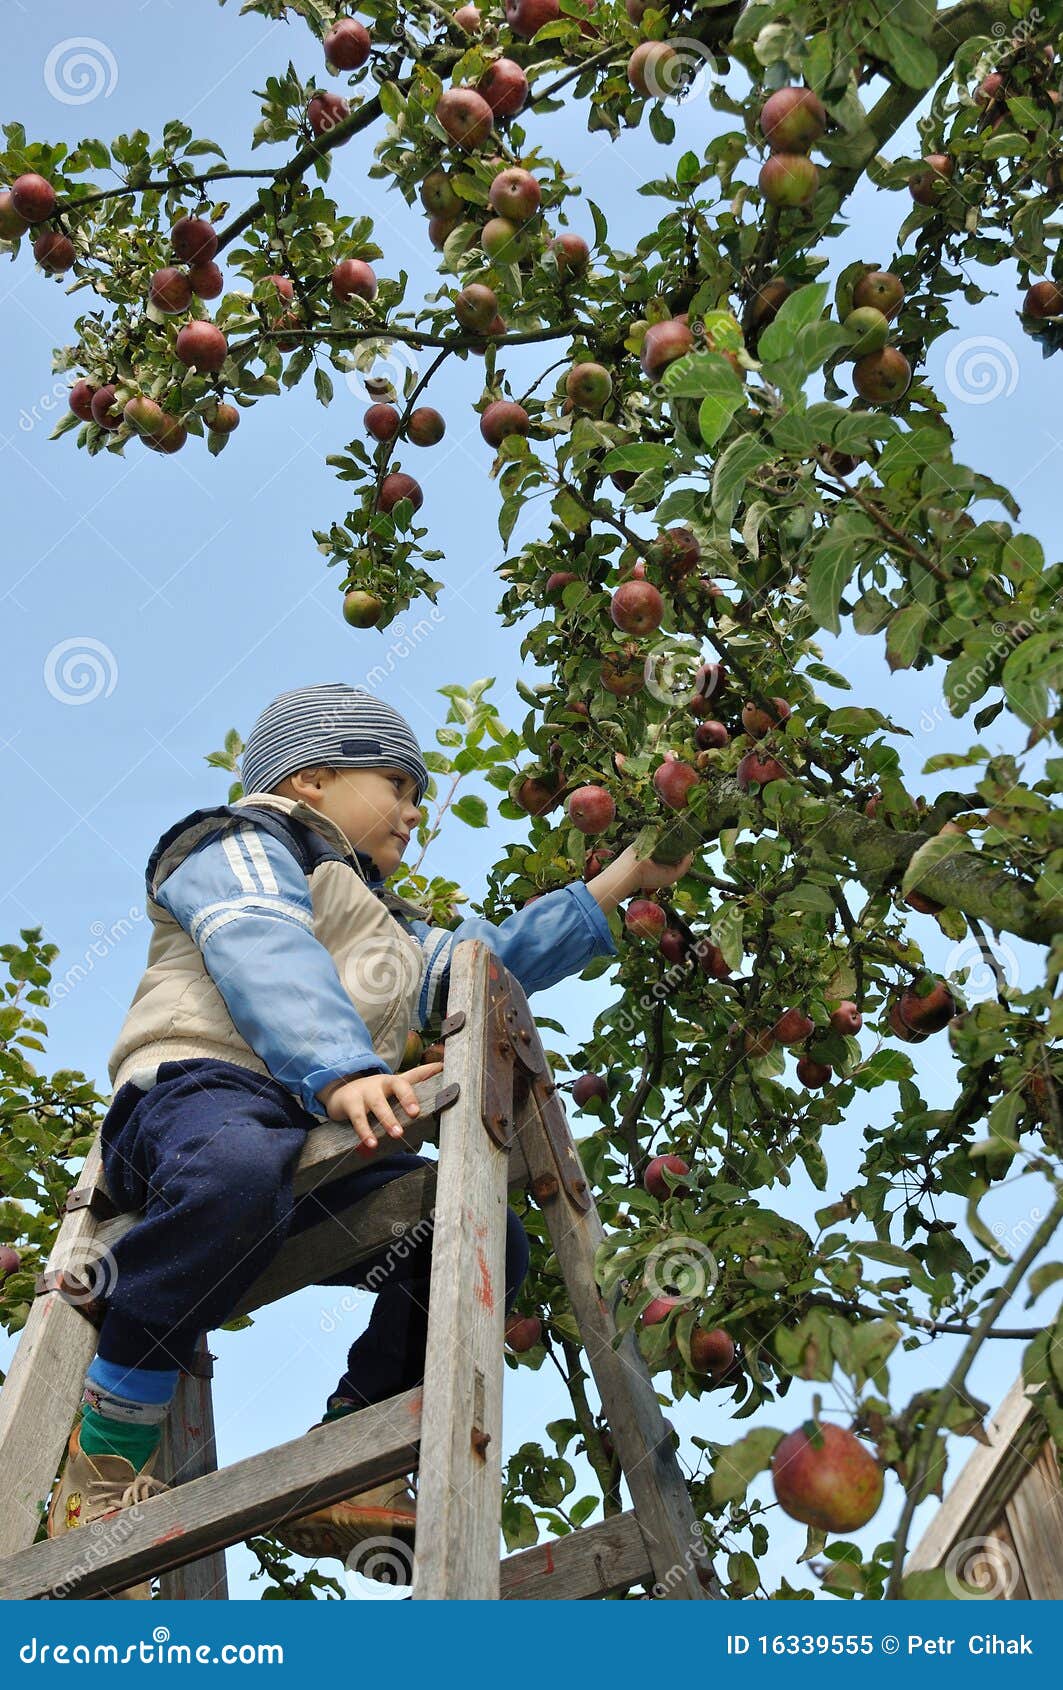 苹果挑选. 采摘成熟活梯的苹果男孩